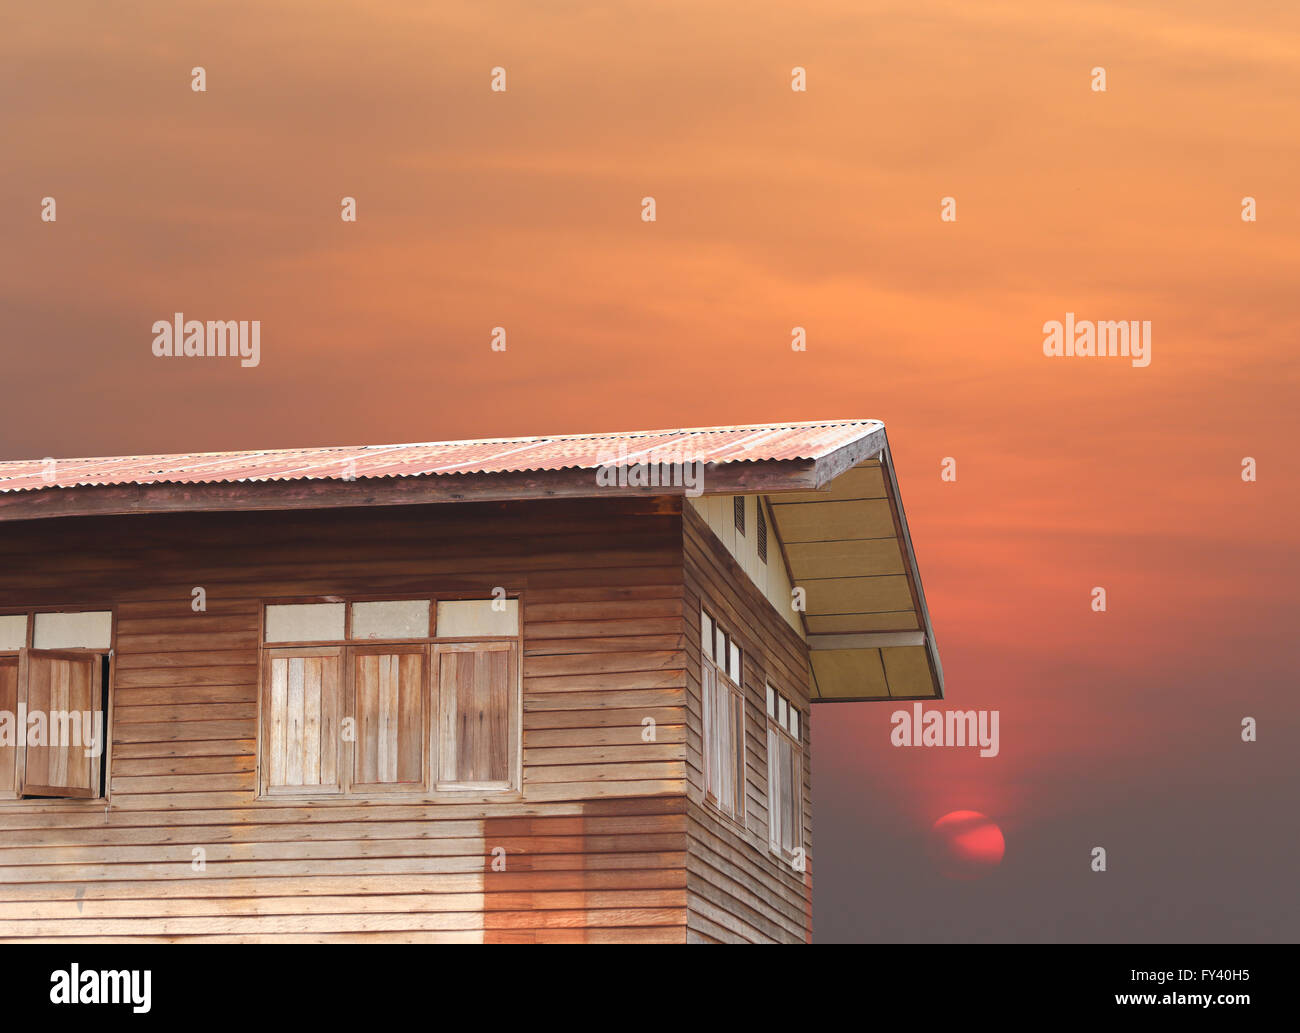 Alte hölzerne Haus Baustil aus Thailand Design und Sonnenuntergang Abend. Stockfoto